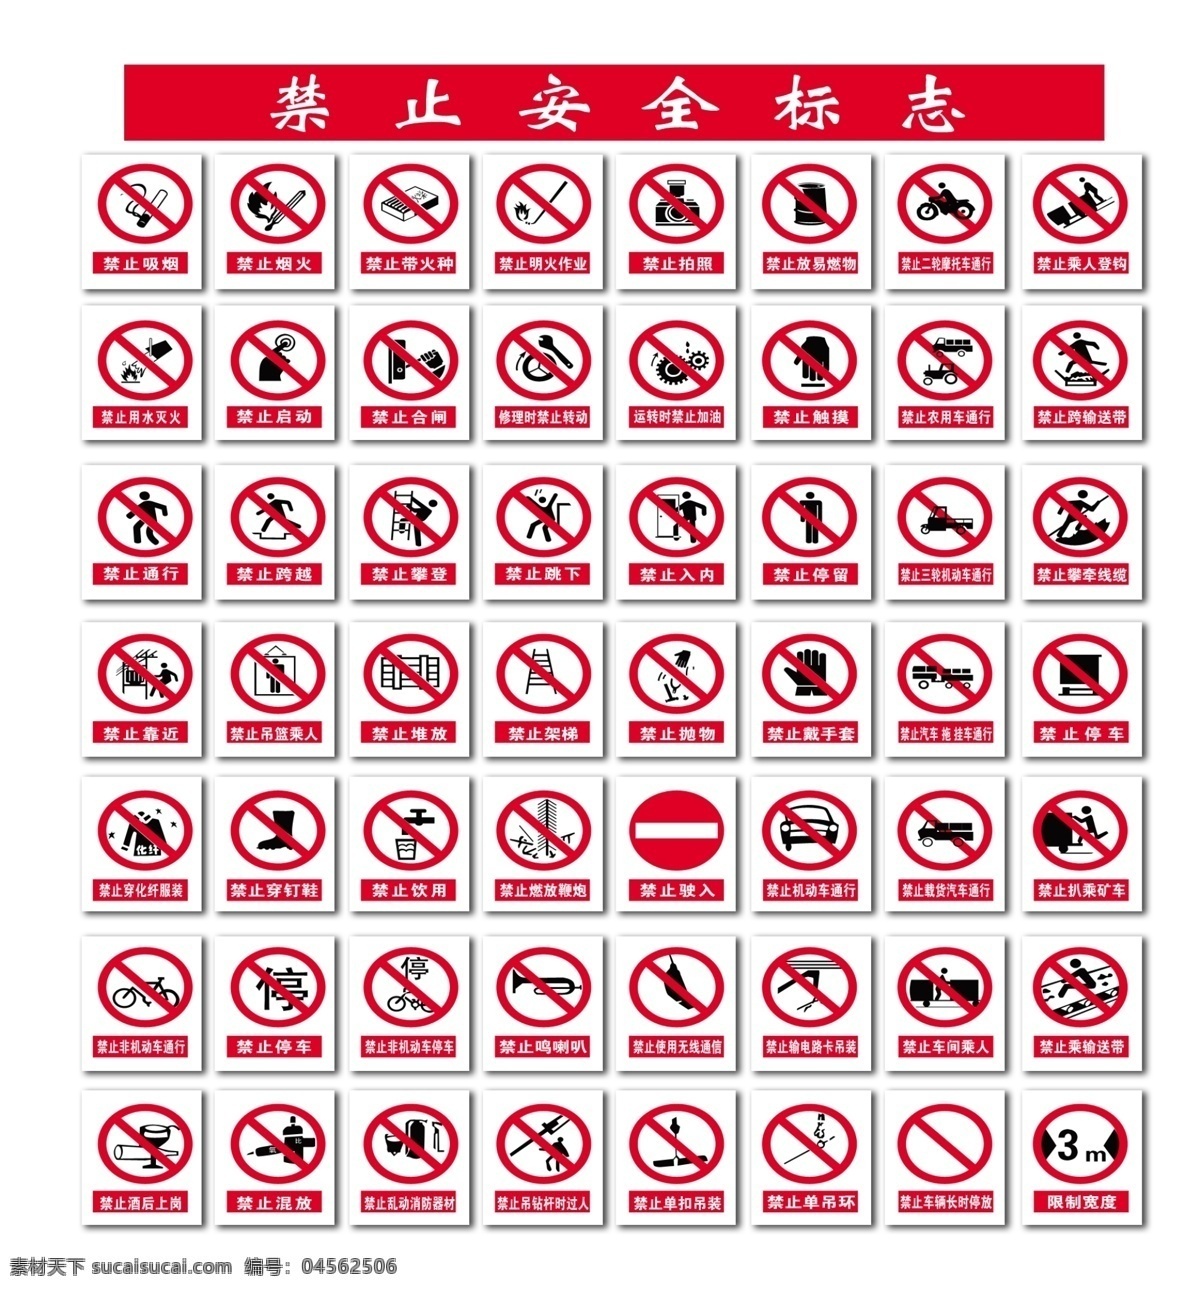 安全标识 logo 公共标志 公共图标 注意安全 禁止 建筑工地 安全 生产标识 警示牌 当心 红色 指示安全标志 指令安全标志 禁止安全标志 警告安全标志 标准电力标志 豆腐作品 标志图标 公共标识标志